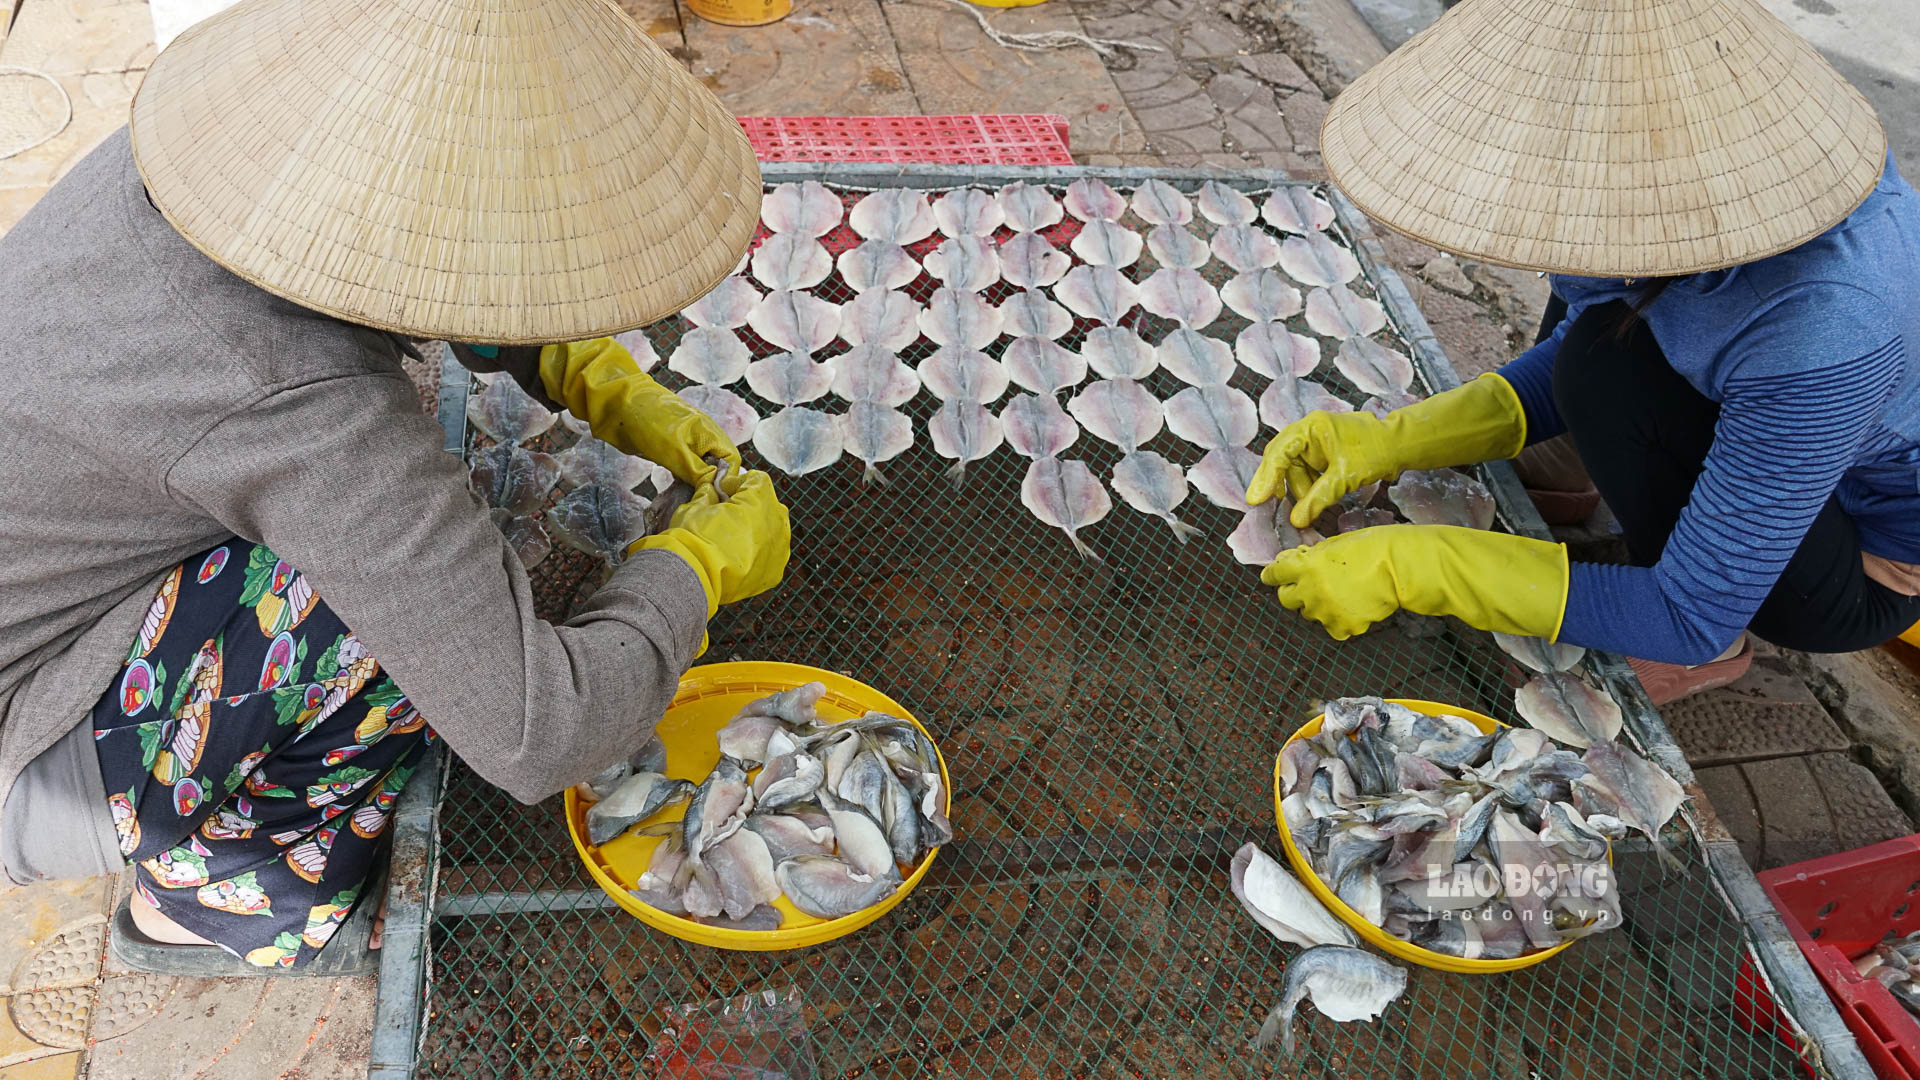 Nghề làm cá khô ở Trần Đề (Sóc Trăng) giúp nhiều lao động có thu nhập ổn định. Ảnh: Phương Anh.